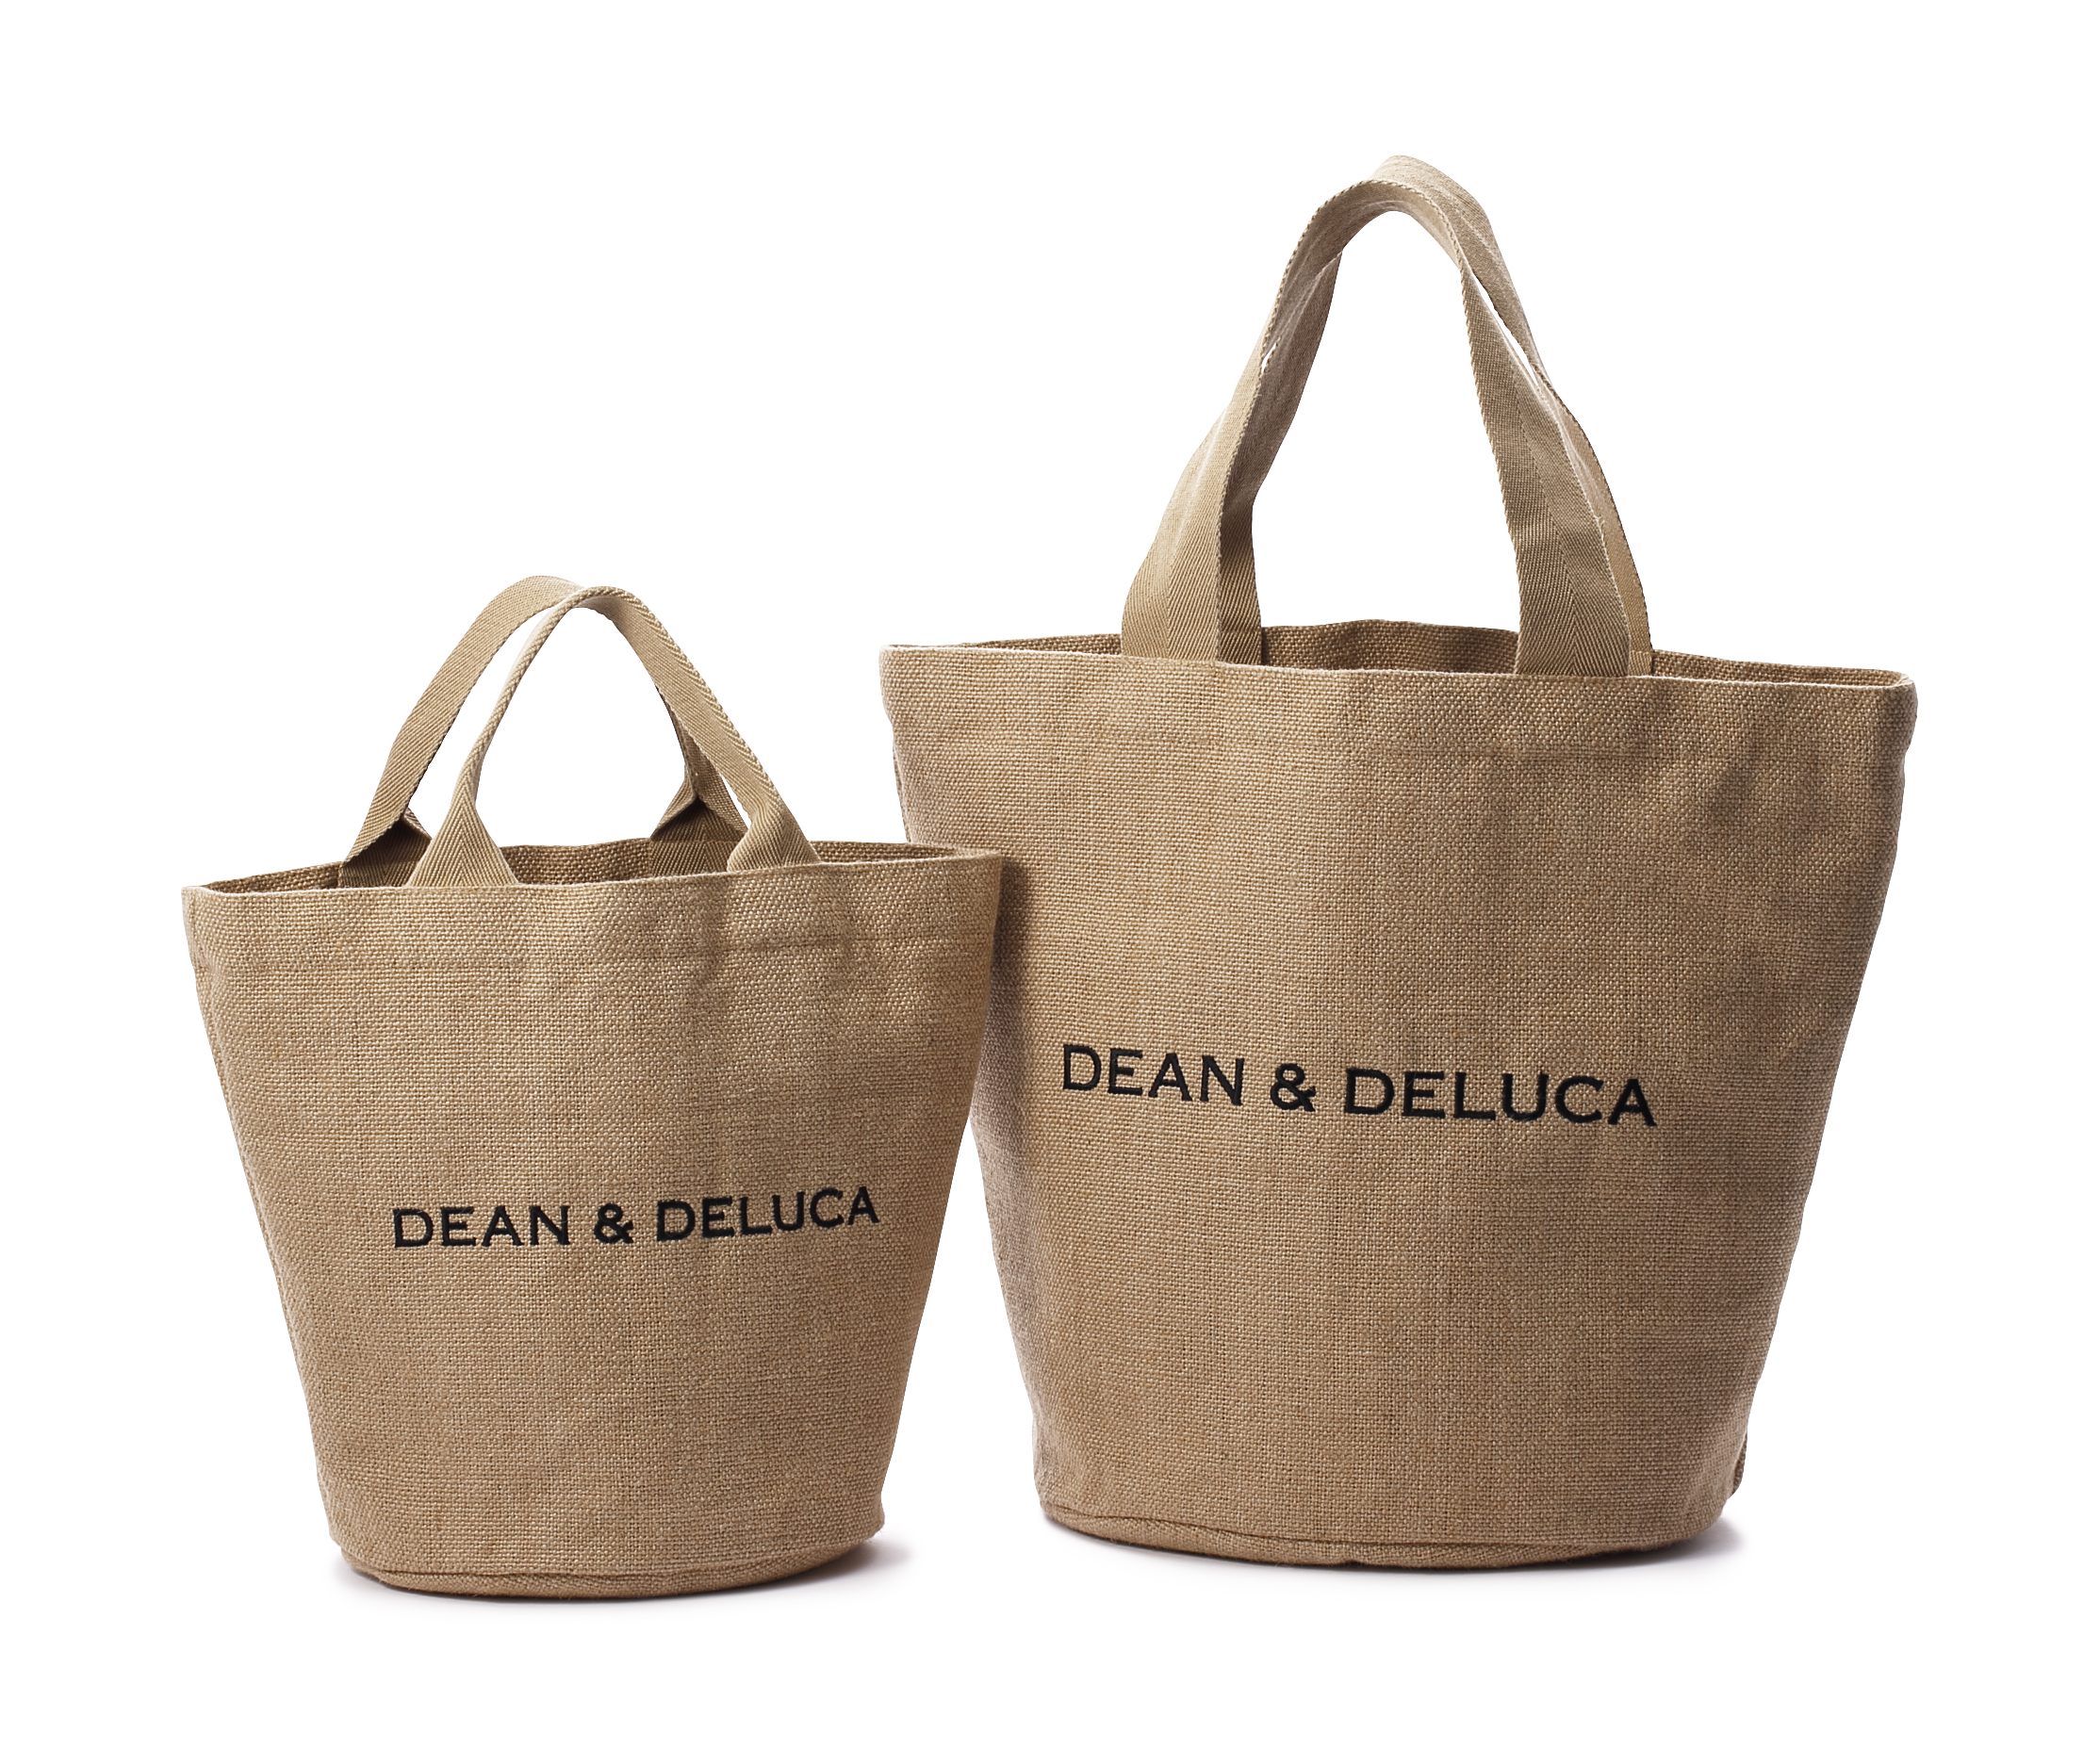 DEAN & DELUCA 日本上陸20周年記念「ジュート トートバッグ」販売 ...